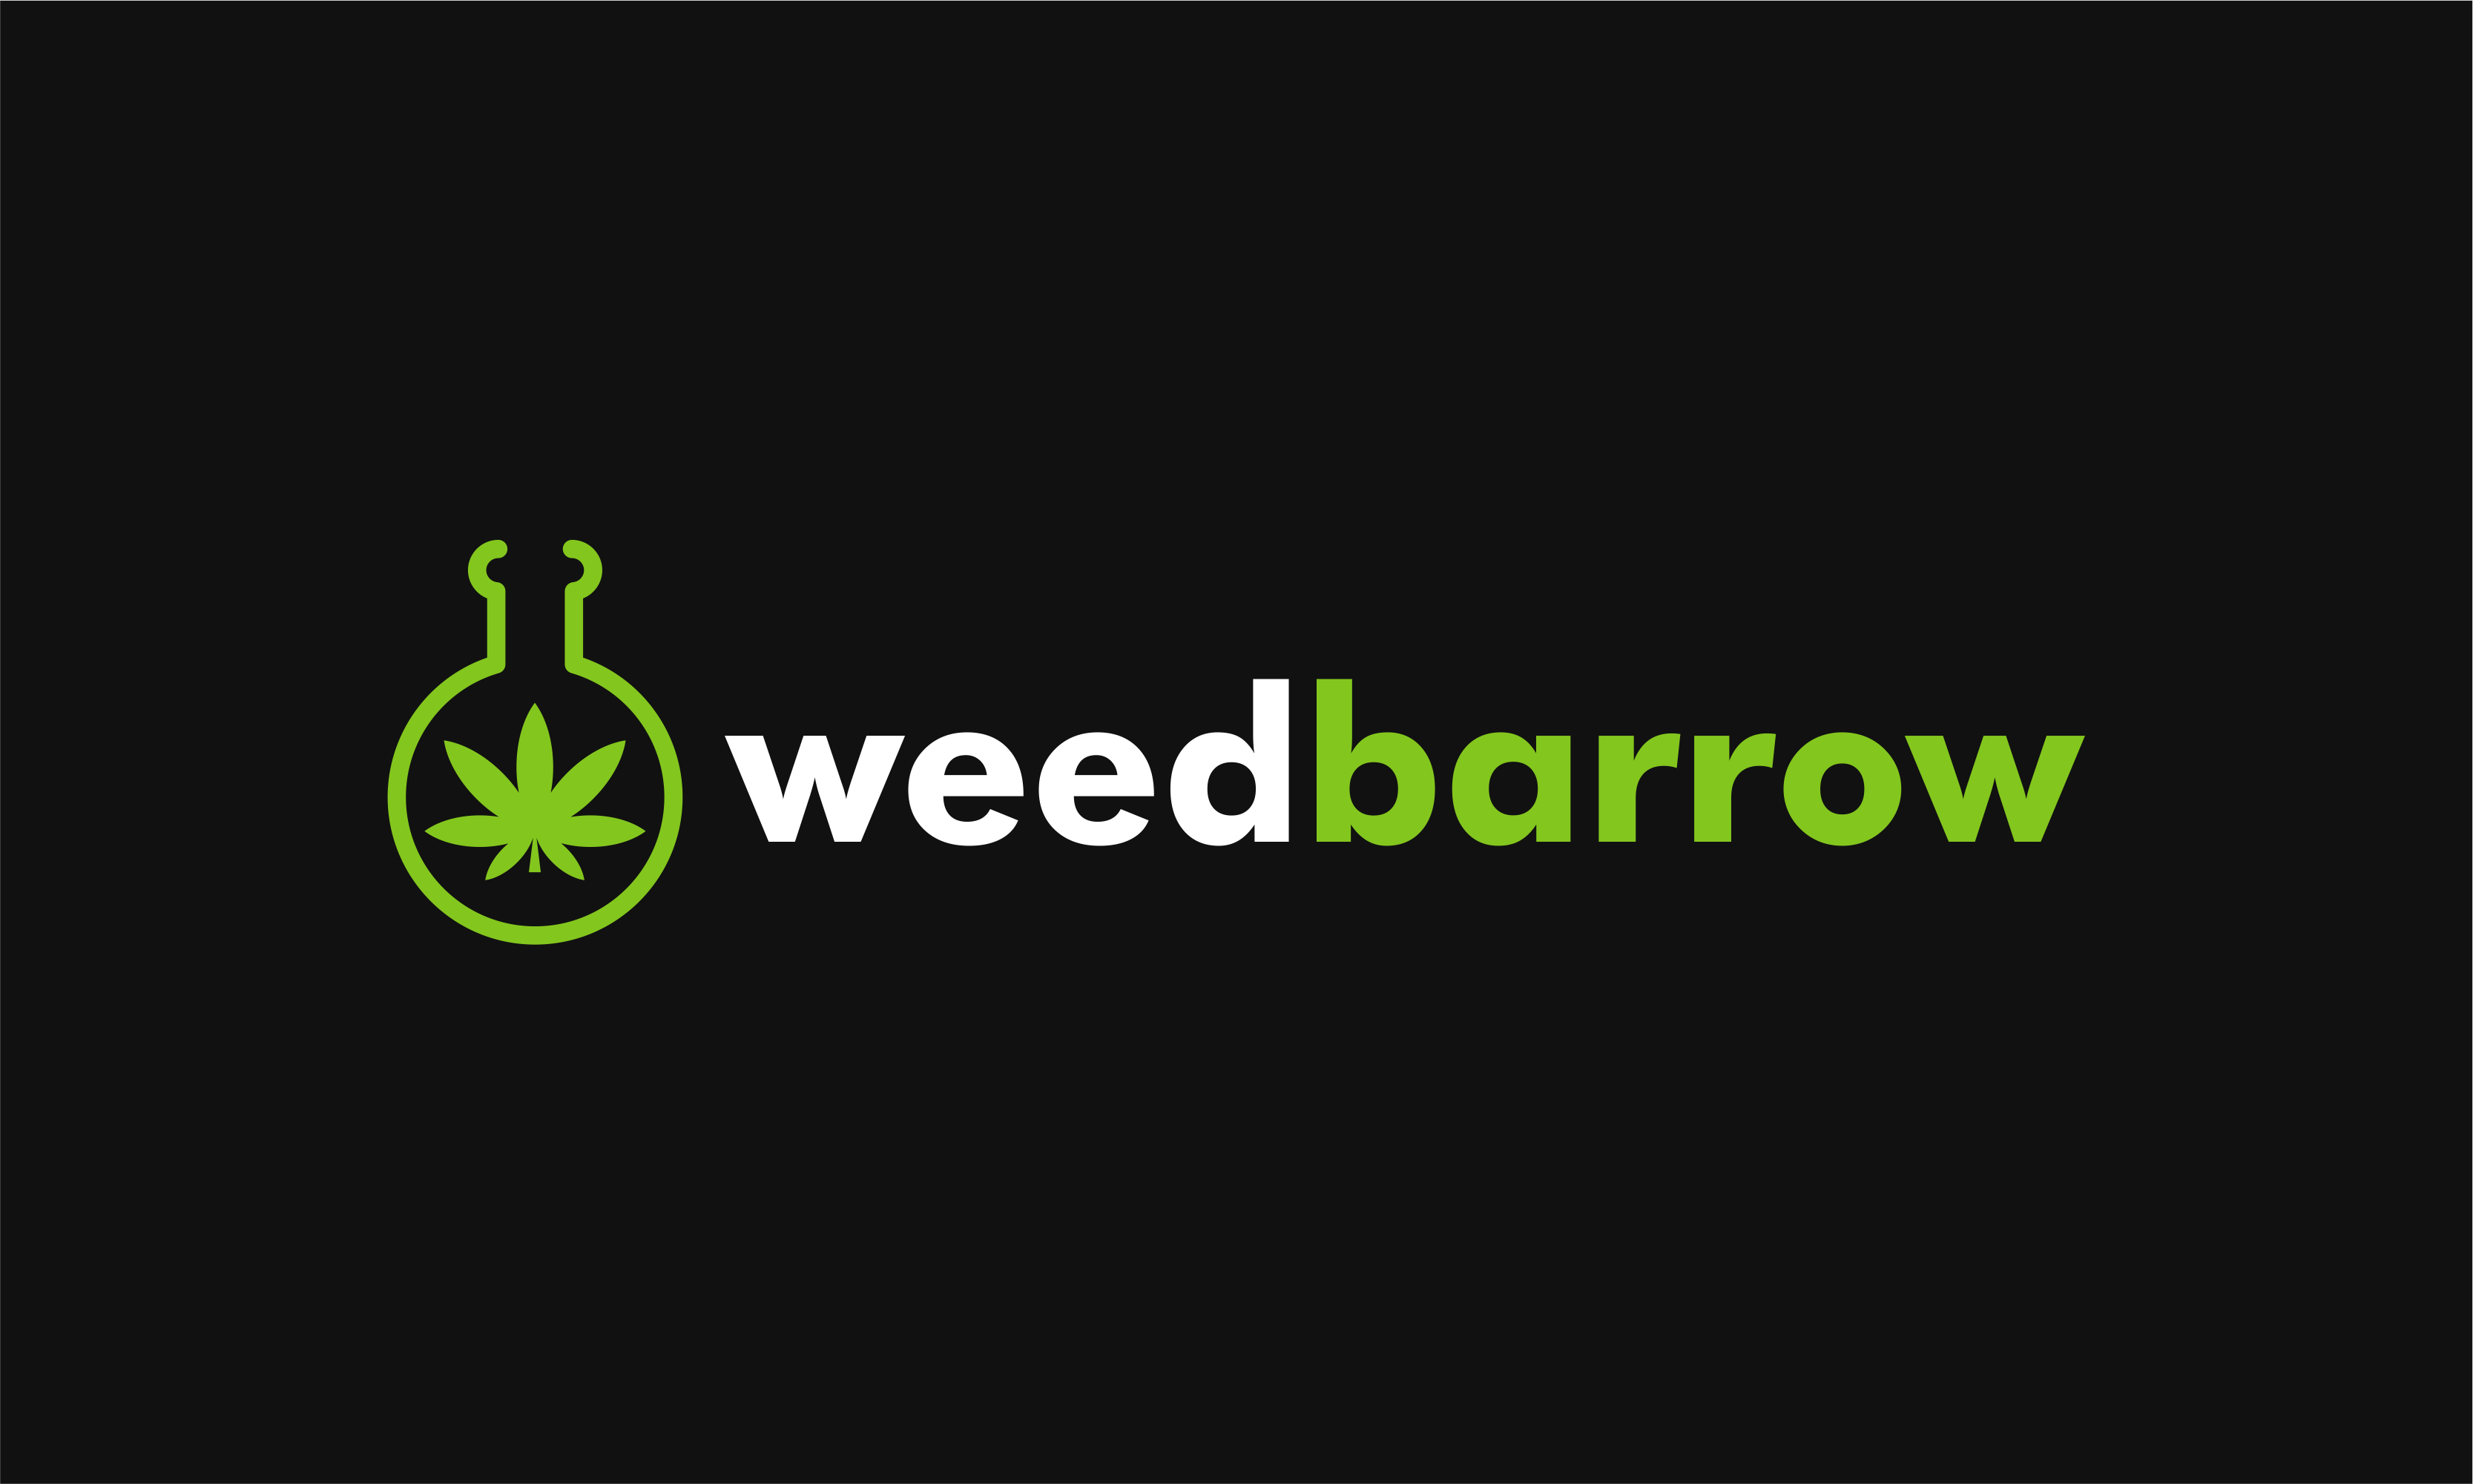 weedbarrow.png